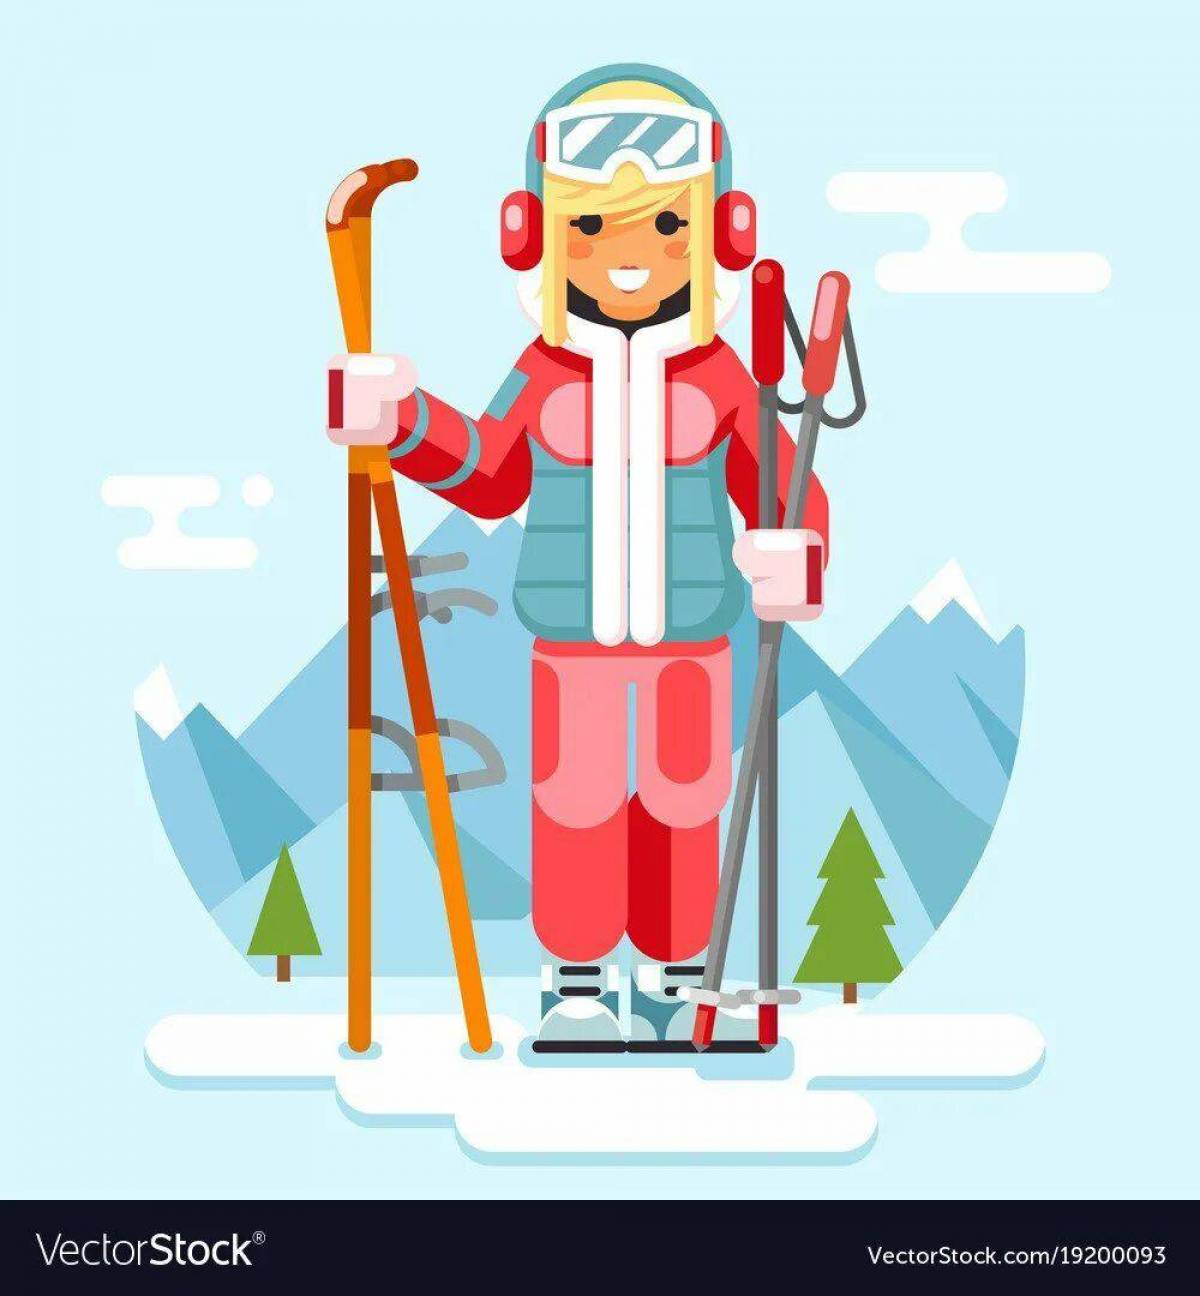 Девочка на лыжах #22